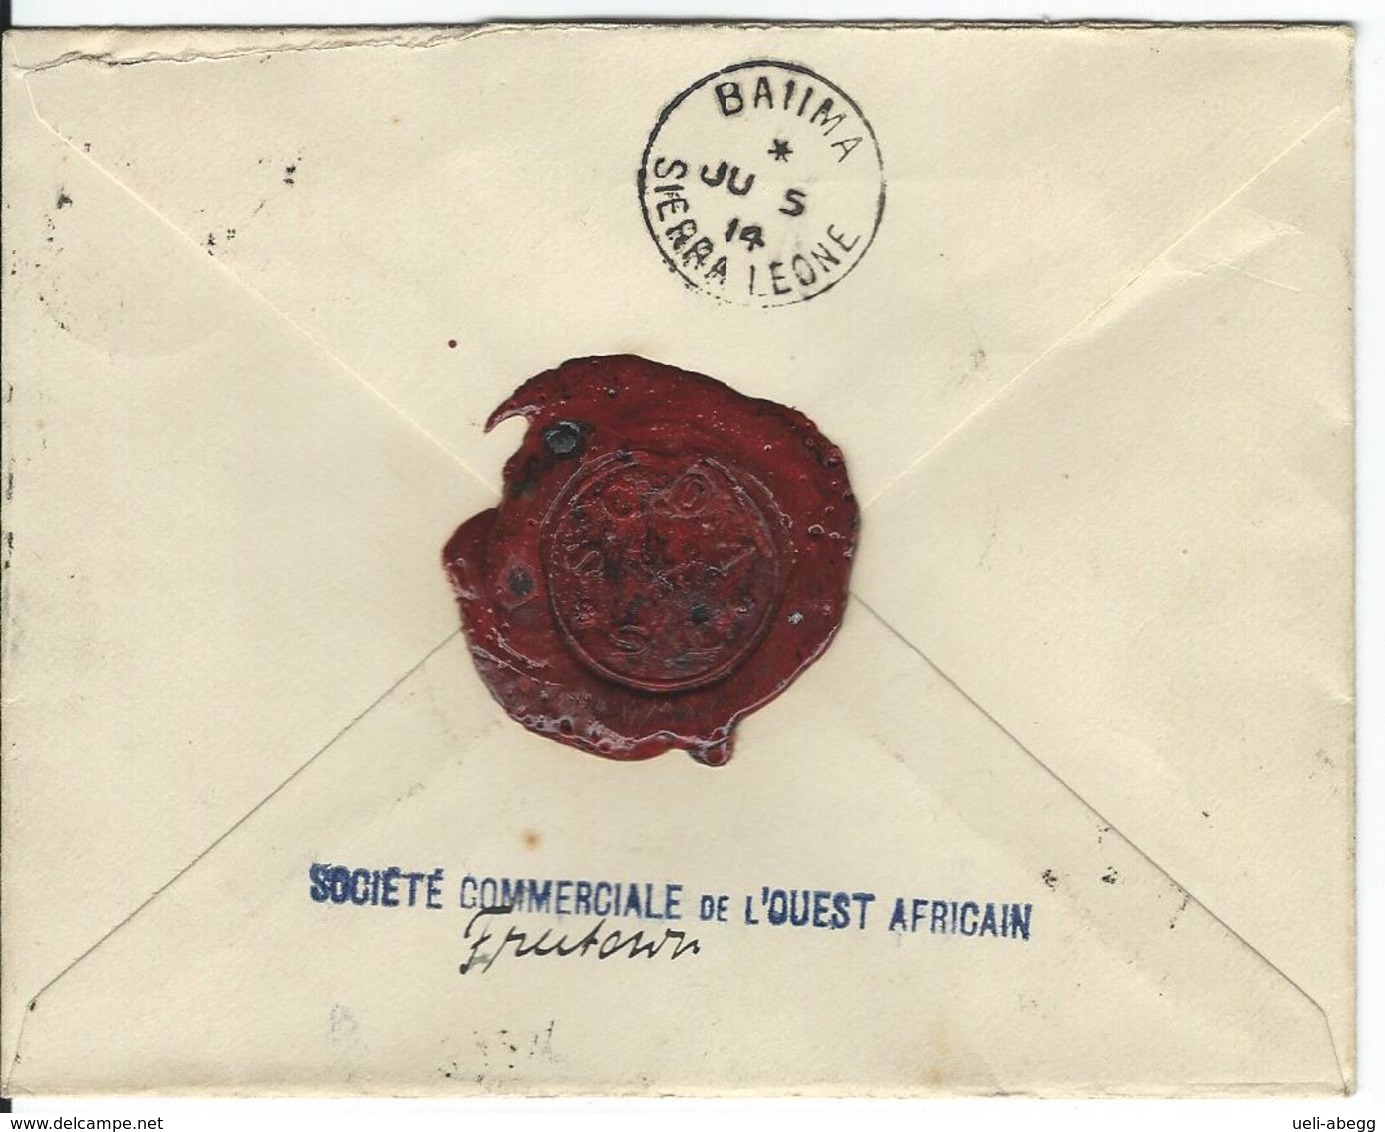 Sierra Leone Registered Stamped Envelope ++ Baiima 5.7.14 To Baiima - Sierra Leone (...-1960)